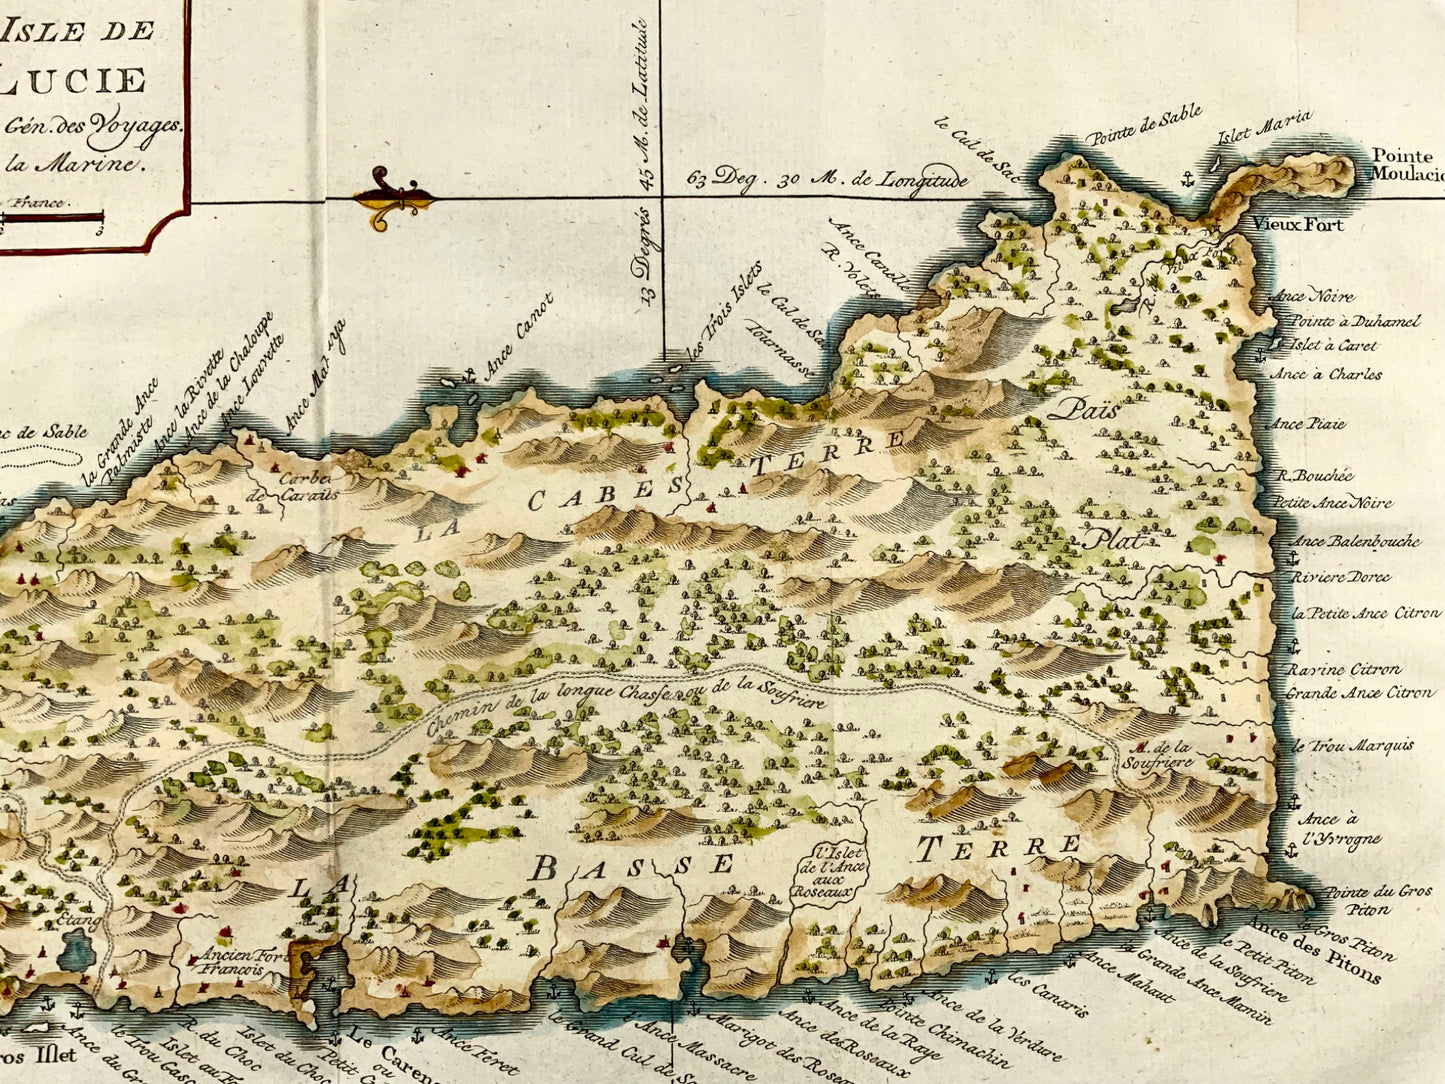 1775, Jacques Nicolas Bellin, Sainte-Lucie, Antilles, carte colorée à la main, topographie étrangère